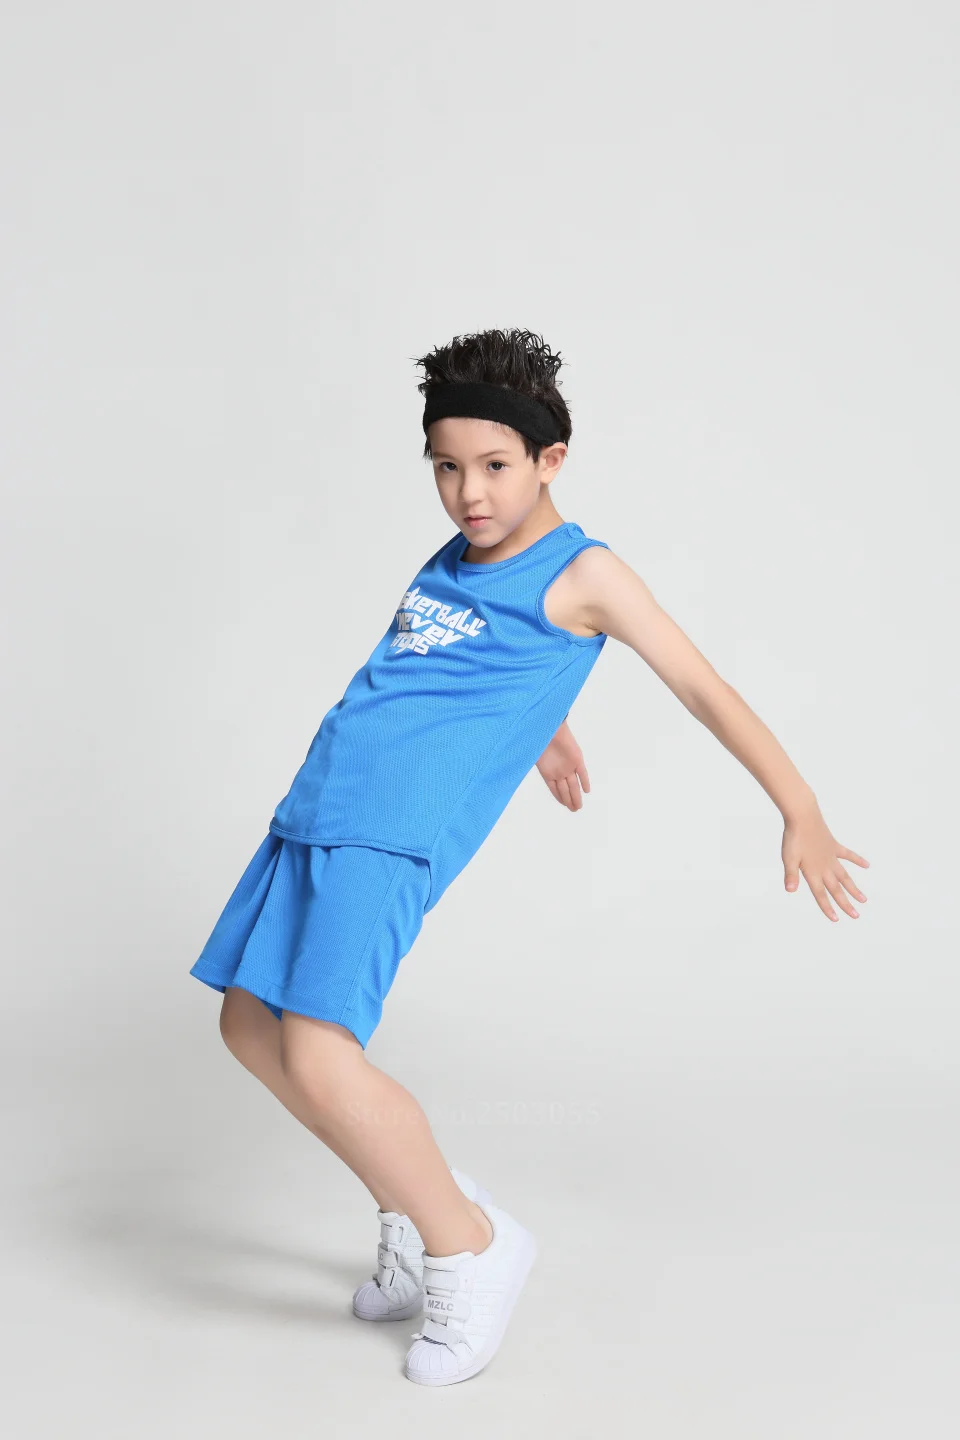 Детские баскетбольные Трикотажные изделия, комплекты униформы, детская спортивная одежда, двухсторонние баскетбольные майки для мальчиков, шорты, костюмы рукоделие принт